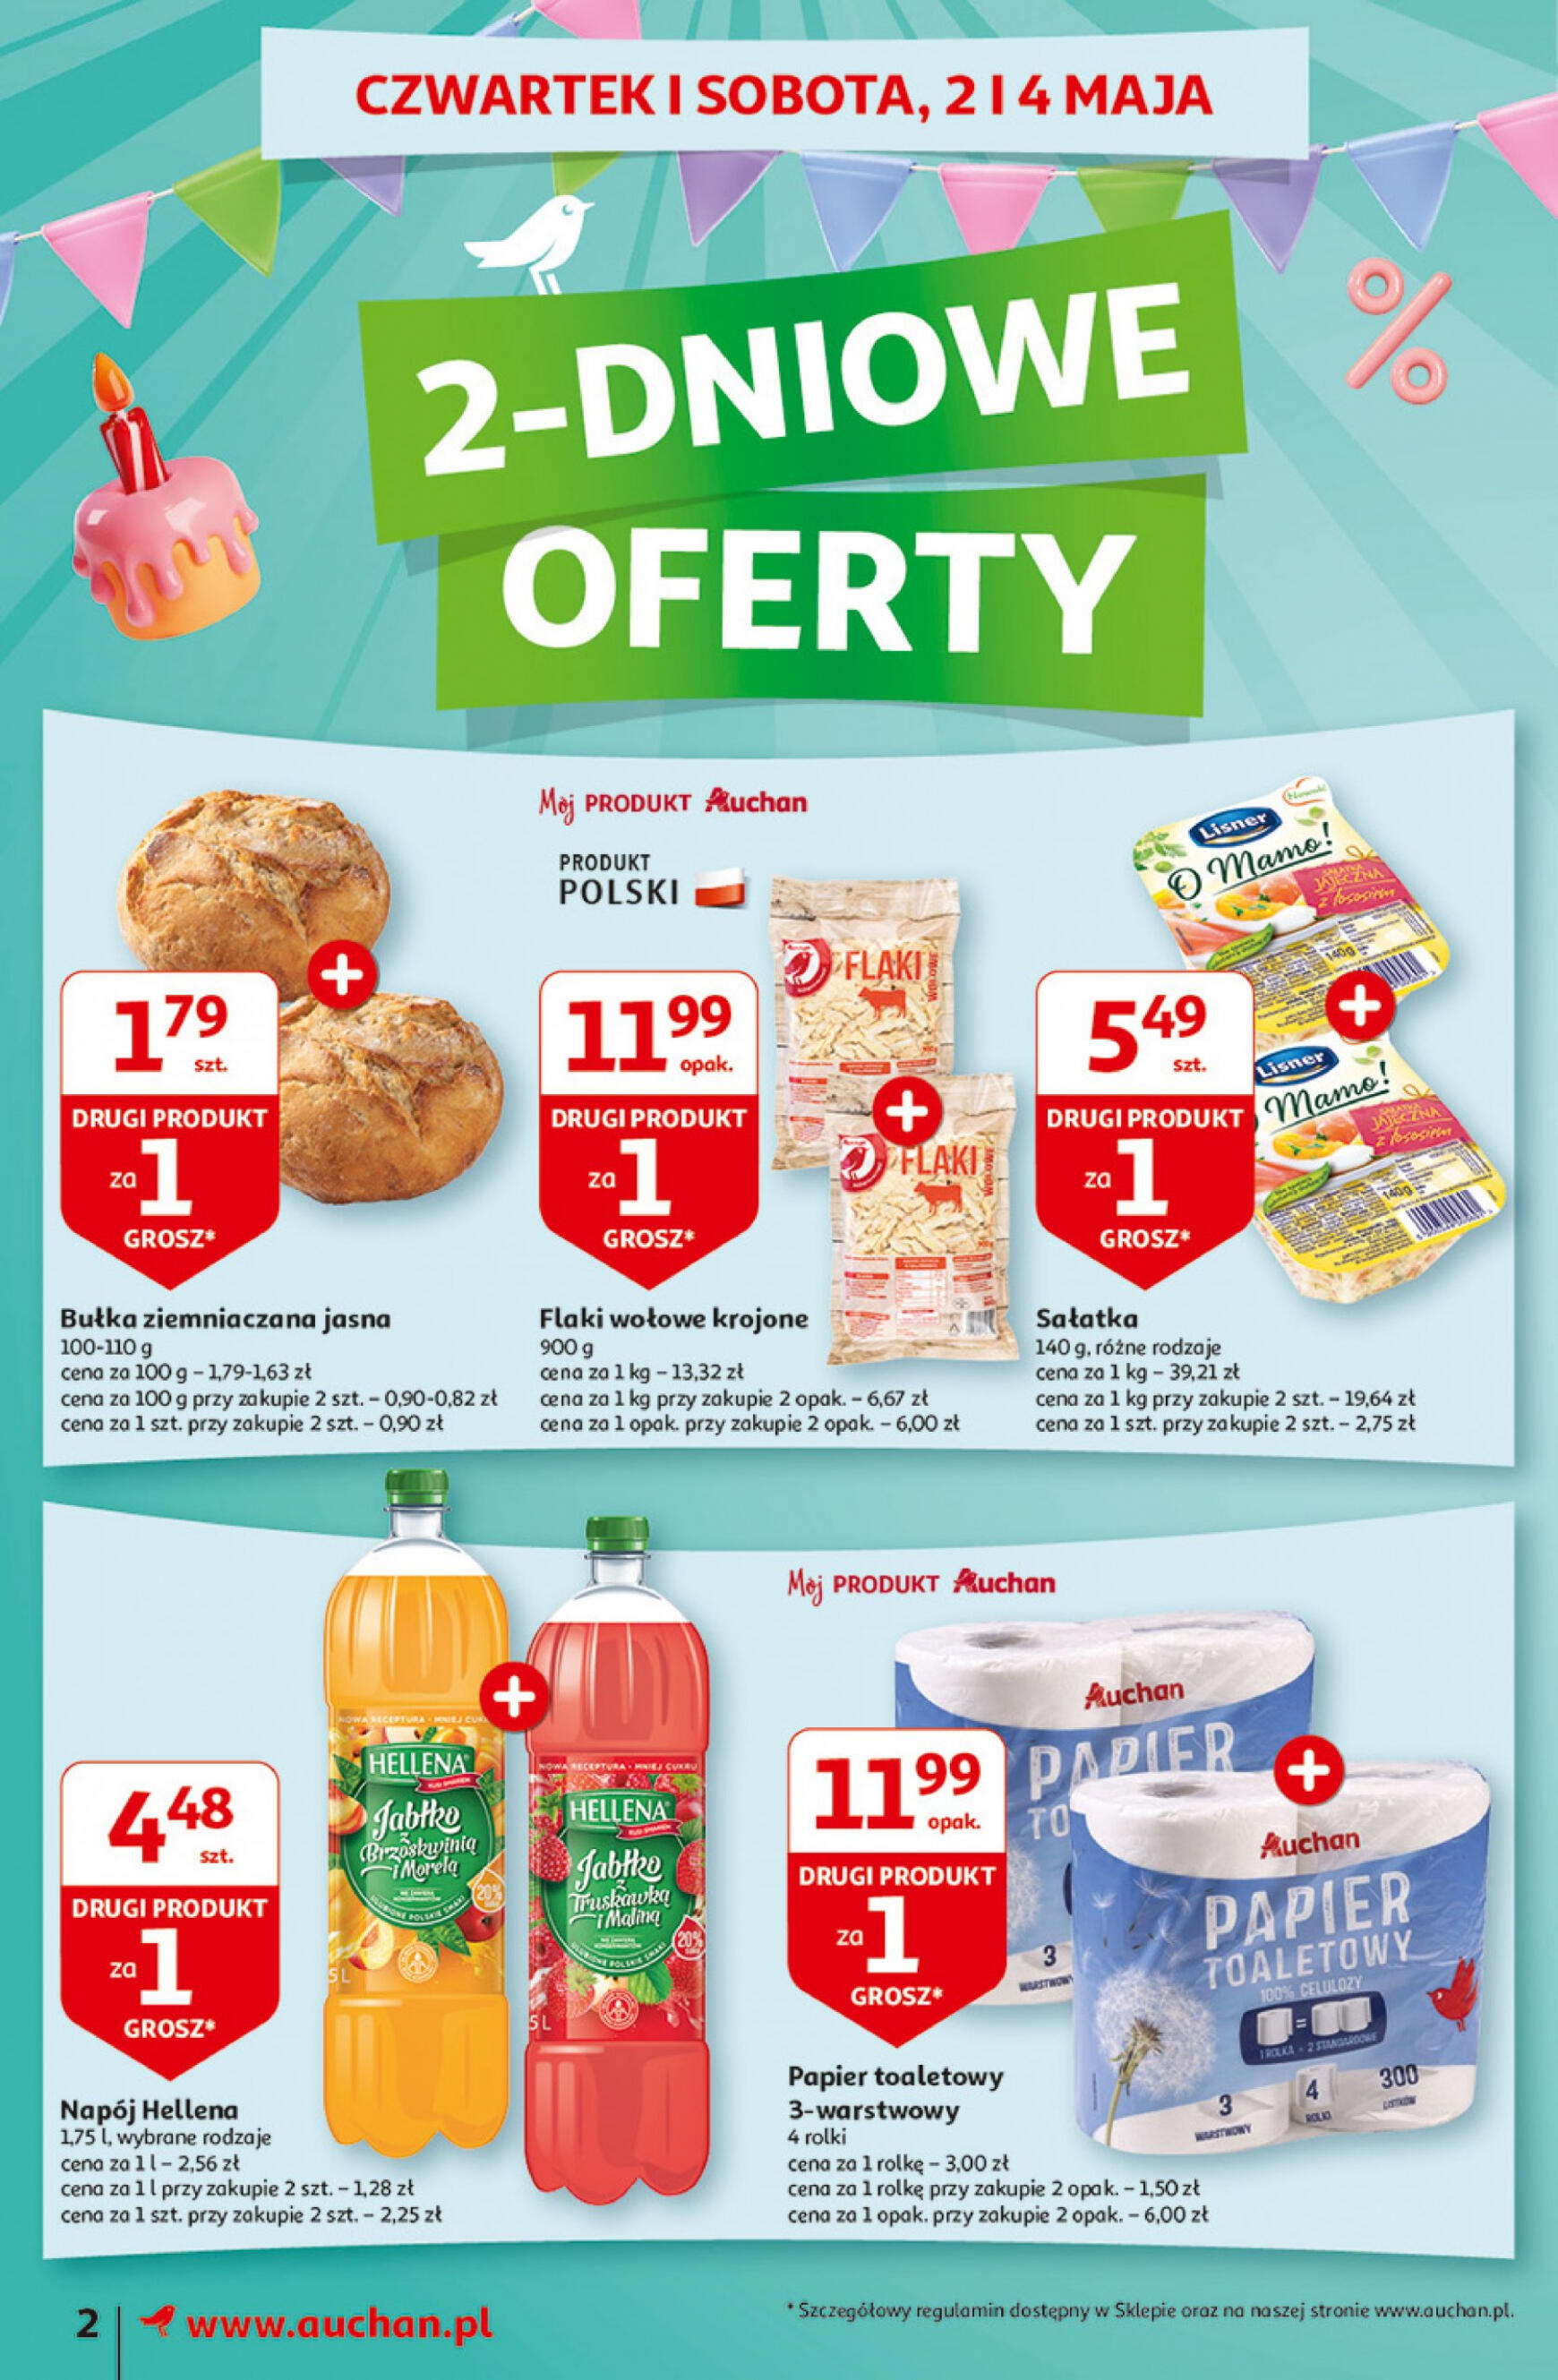 auchan - Moje Auchan - Gazetka Jeszcze taniej na urodziny gazetka aktualna ważna od 02.05. - 08.05. - page: 2